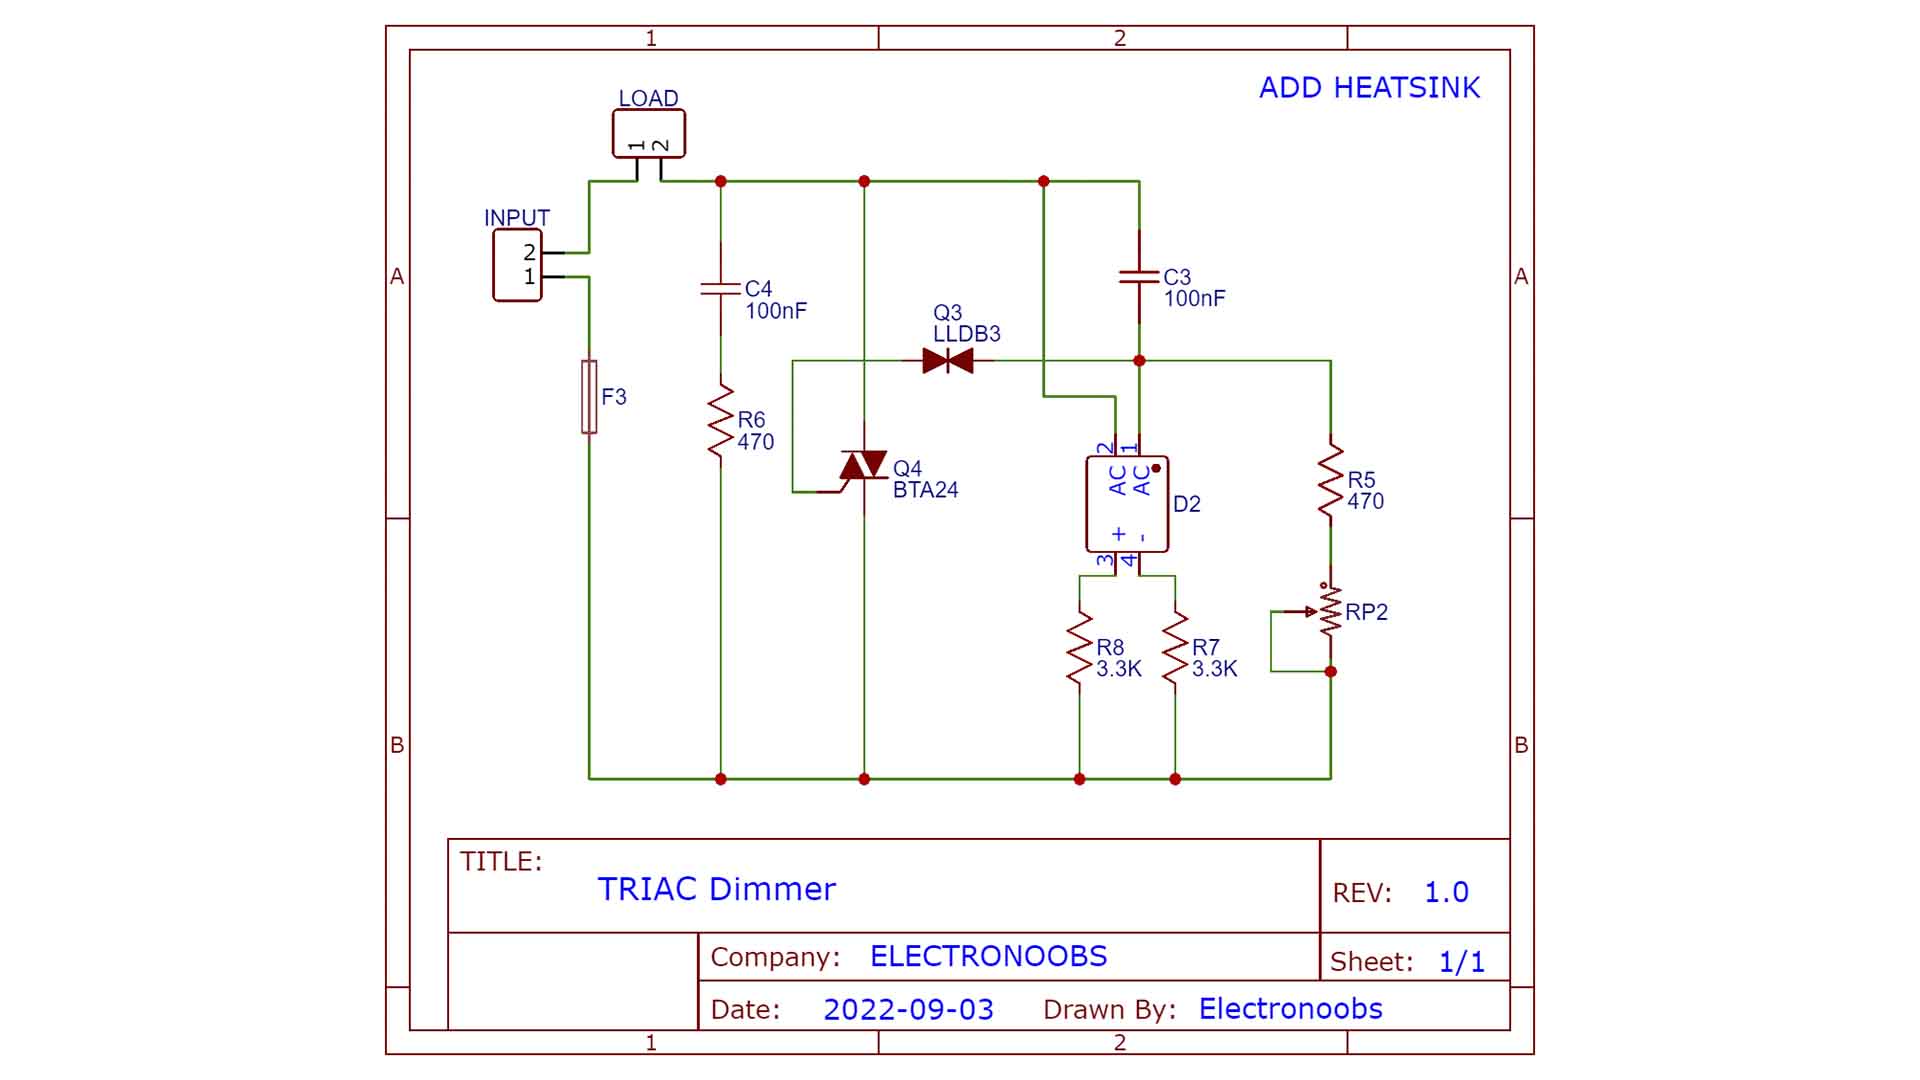 AC TRIAC dimmer circuit schematic